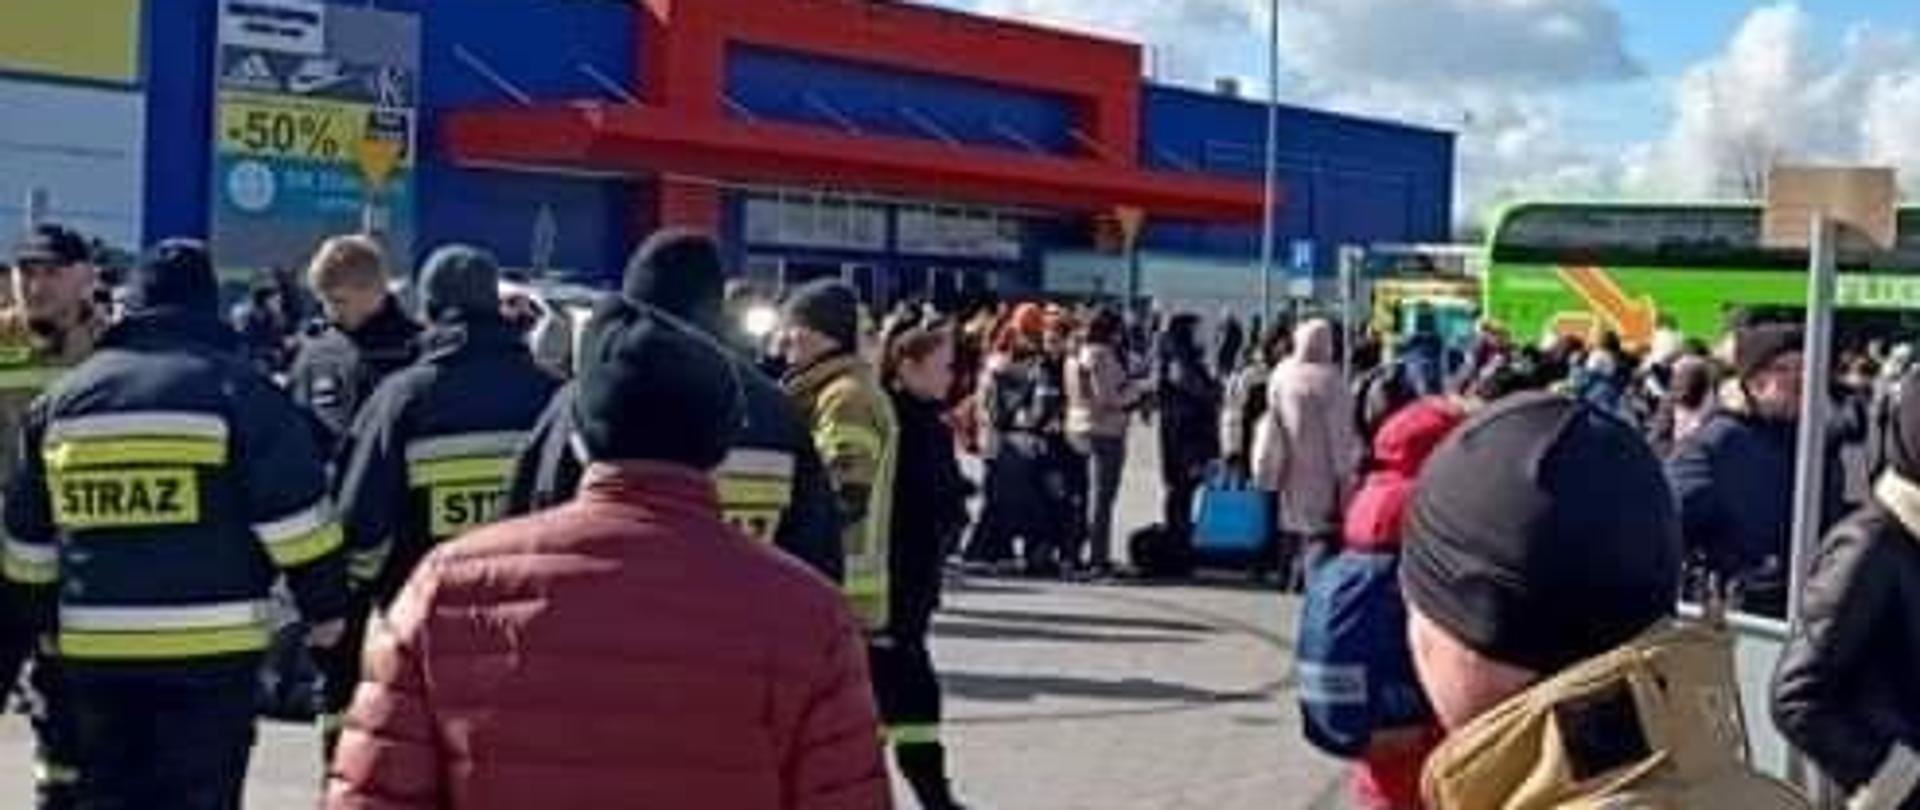 Zdjęcie przedstawia plac przy Tesco. Strażacy koordynują przemieszczanie się uchodźców do autobusów przewożących ich do punktów docelowych w Polsce i za granicą.